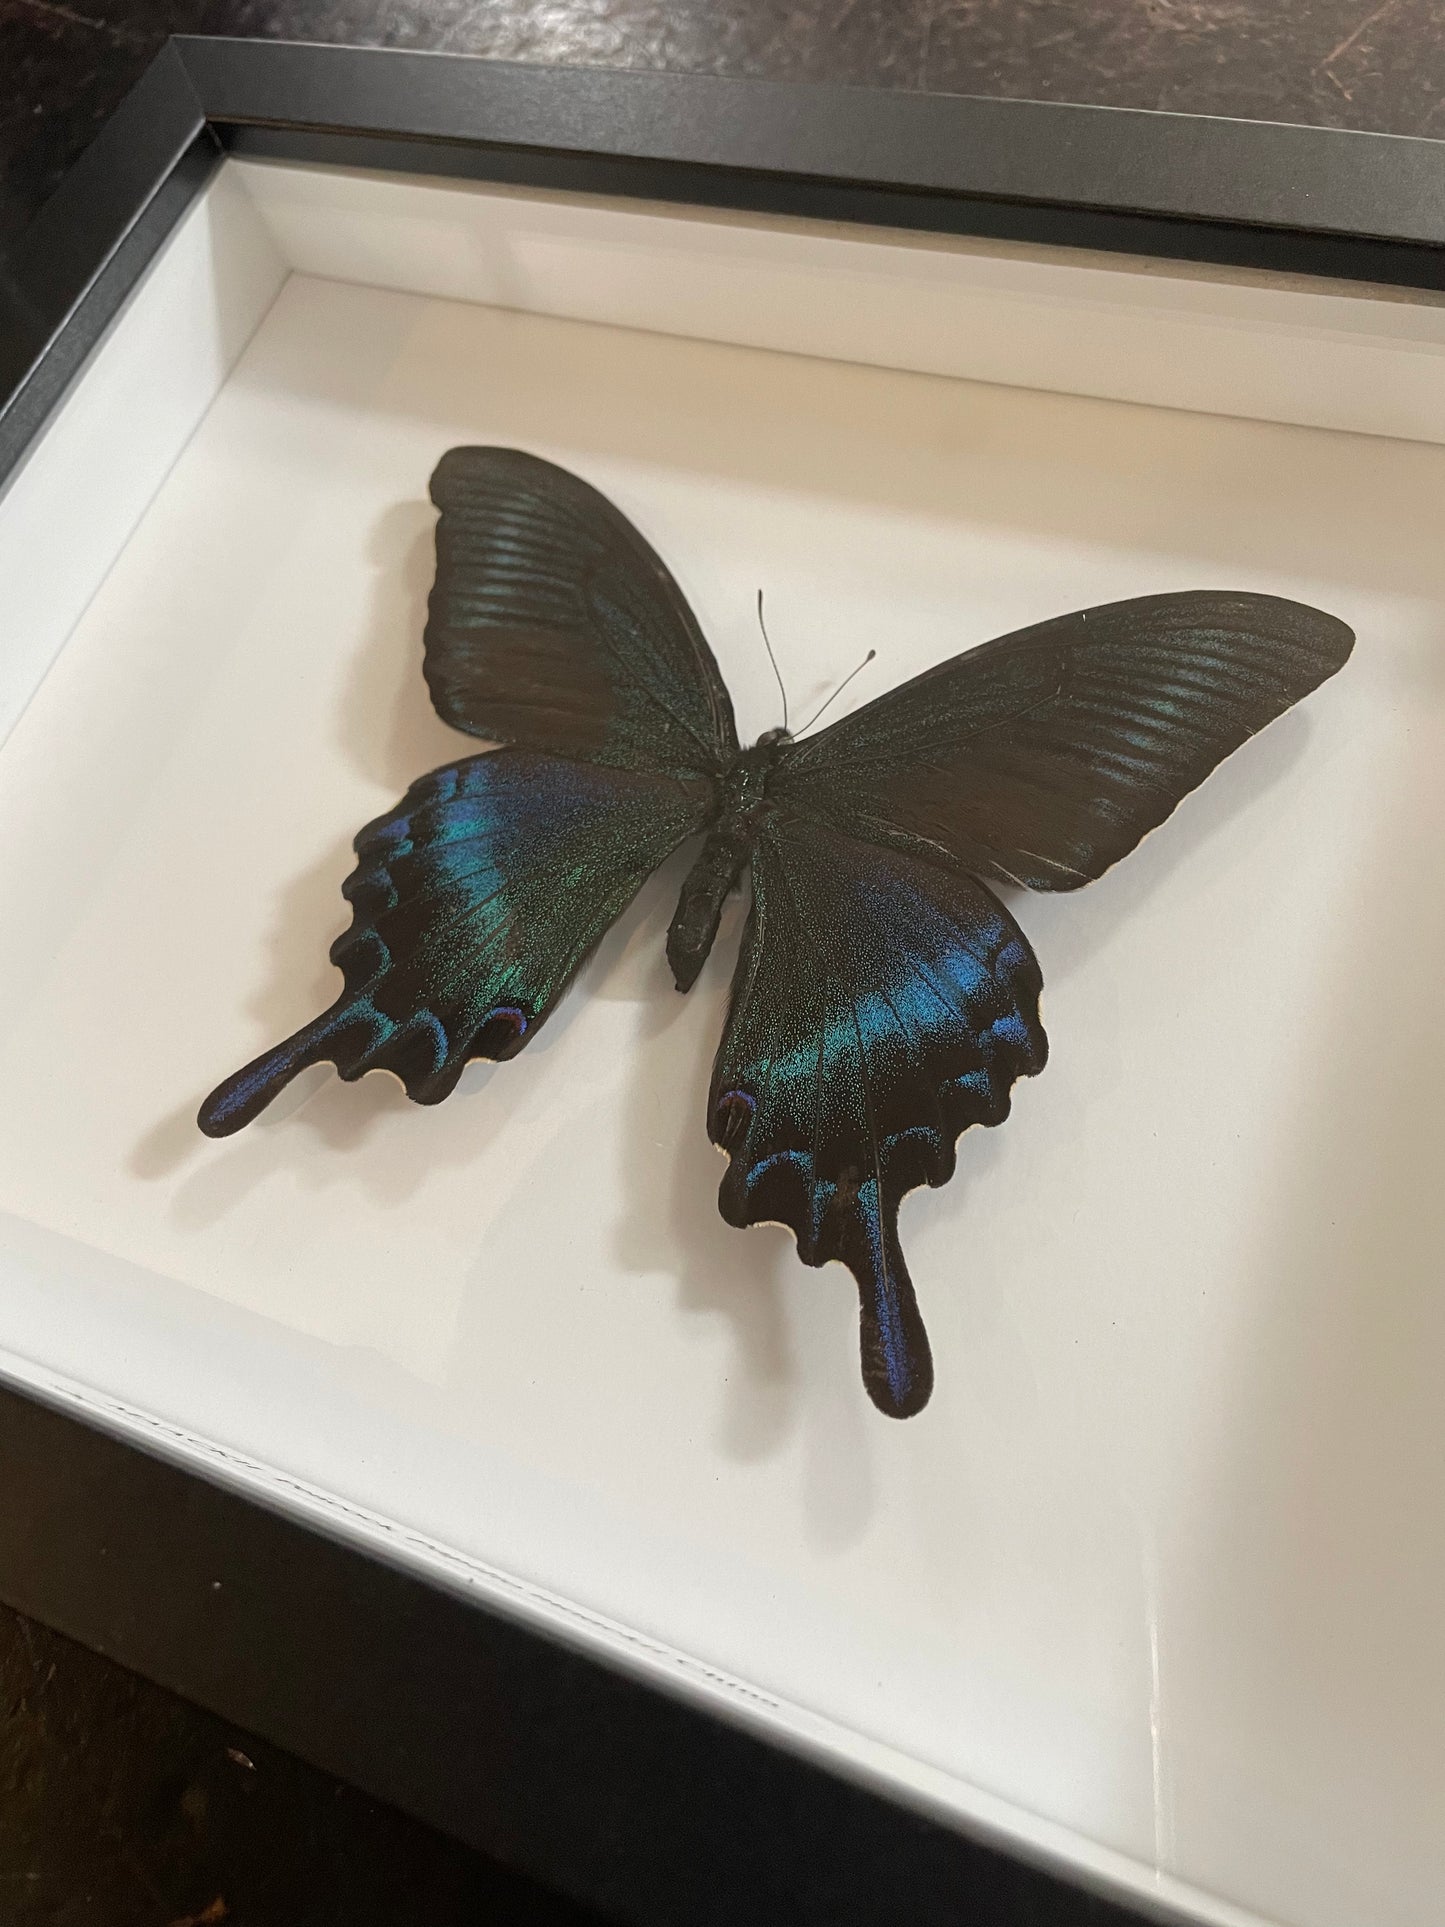 Maackii Peacock Butterfly